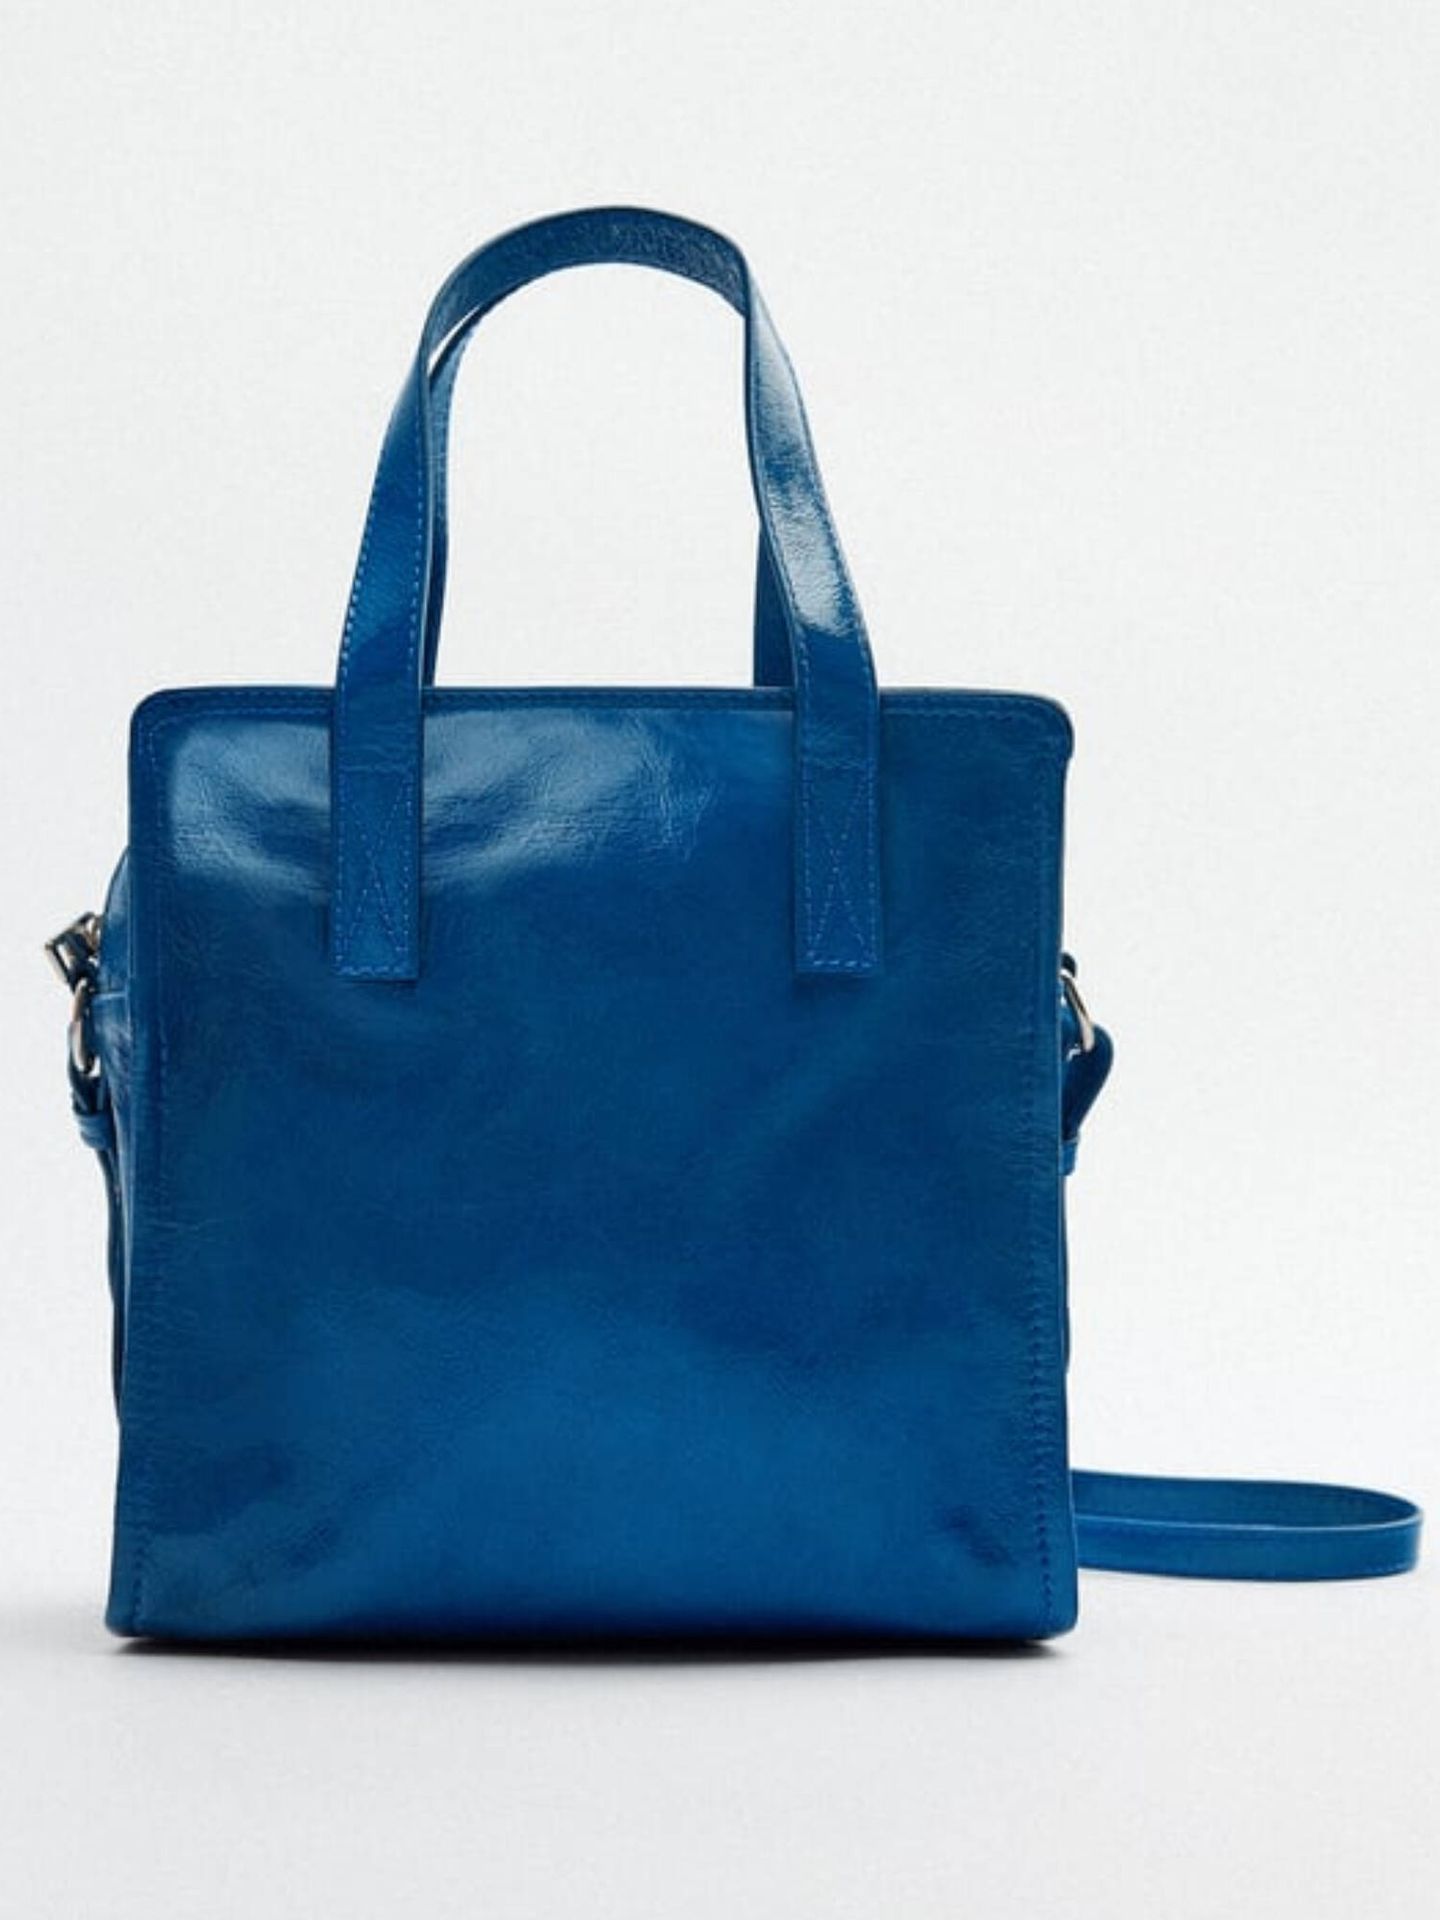 El color de este bolso es para perderse en él. (Zara/Cortesía)